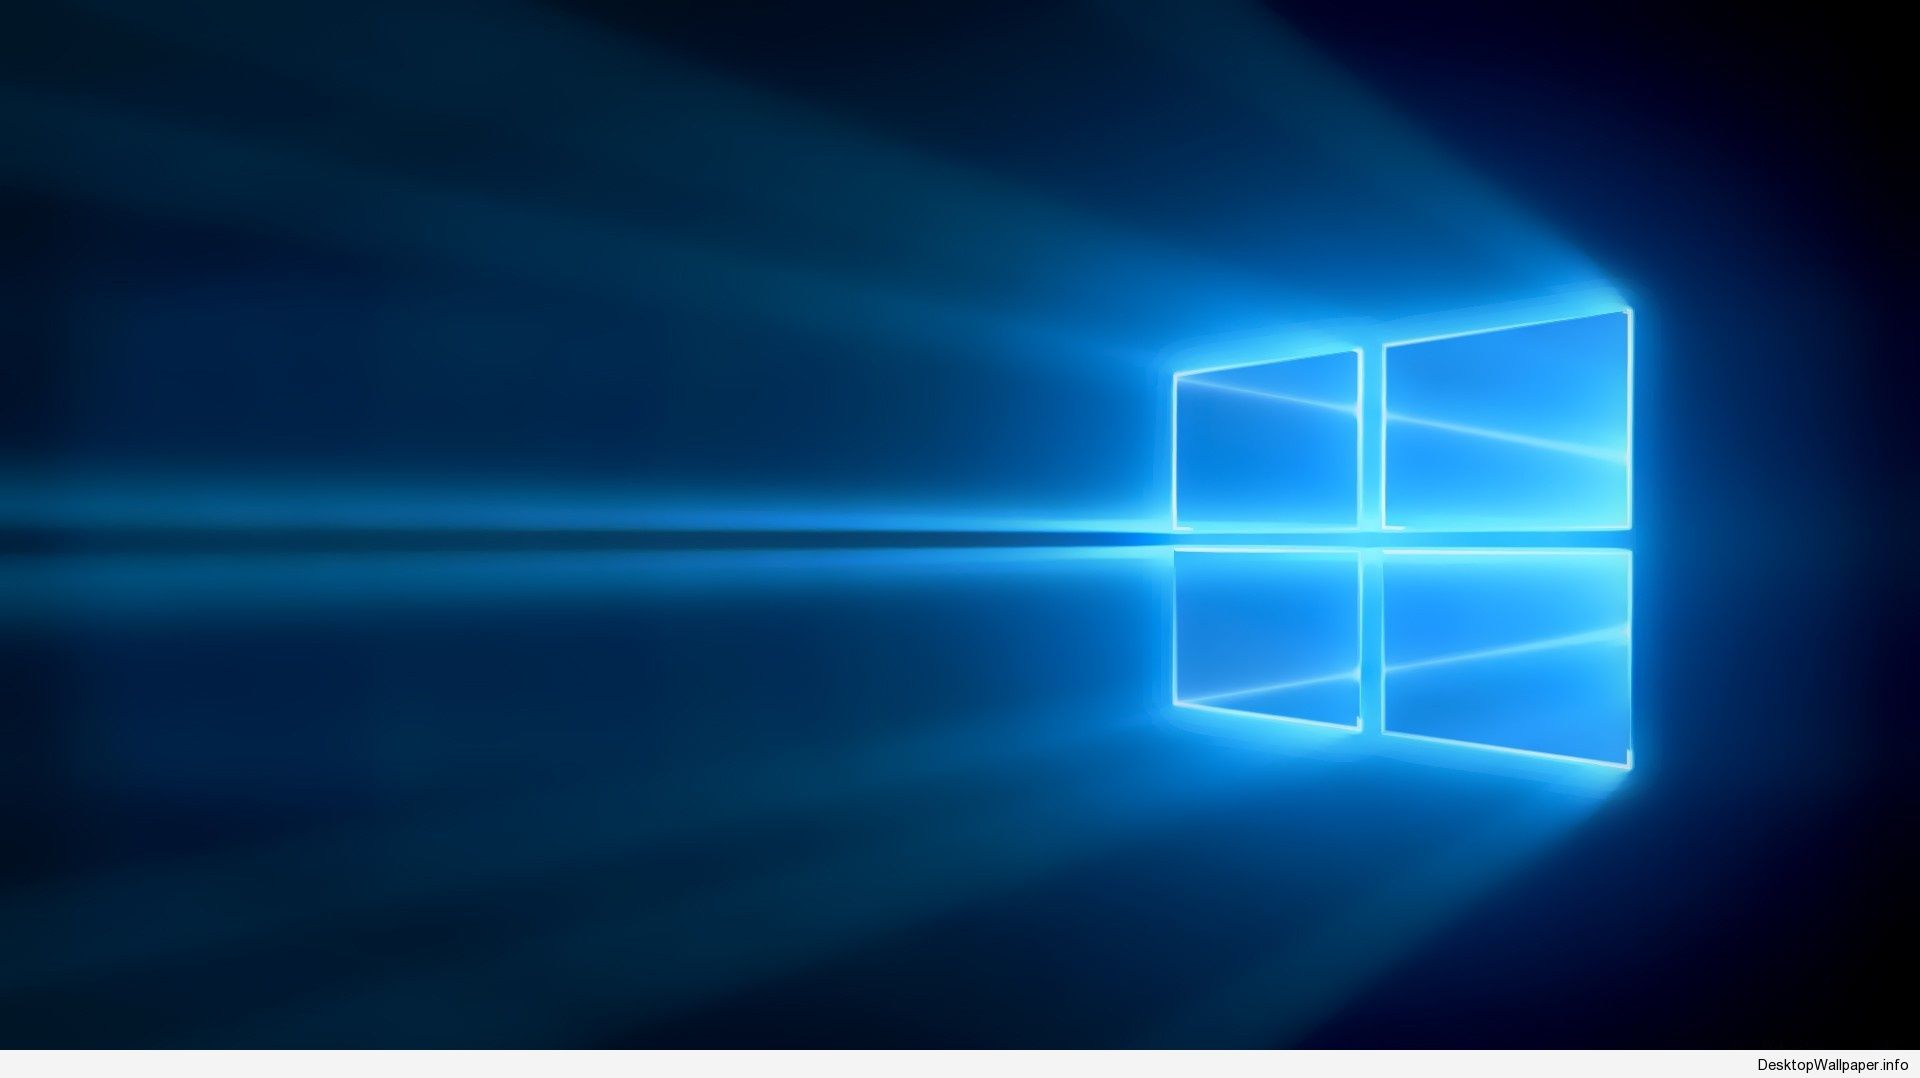 Windows 10 là một trong những hệ điều hành được ưa chuộng nhất thế giới! Không chỉ có tính năng tuyệt vời, Windows 10 còn cung cấp cho người dùng một bộ sưu tập bức tranh nền cực kỳ đa dạng và đẹp mắt.